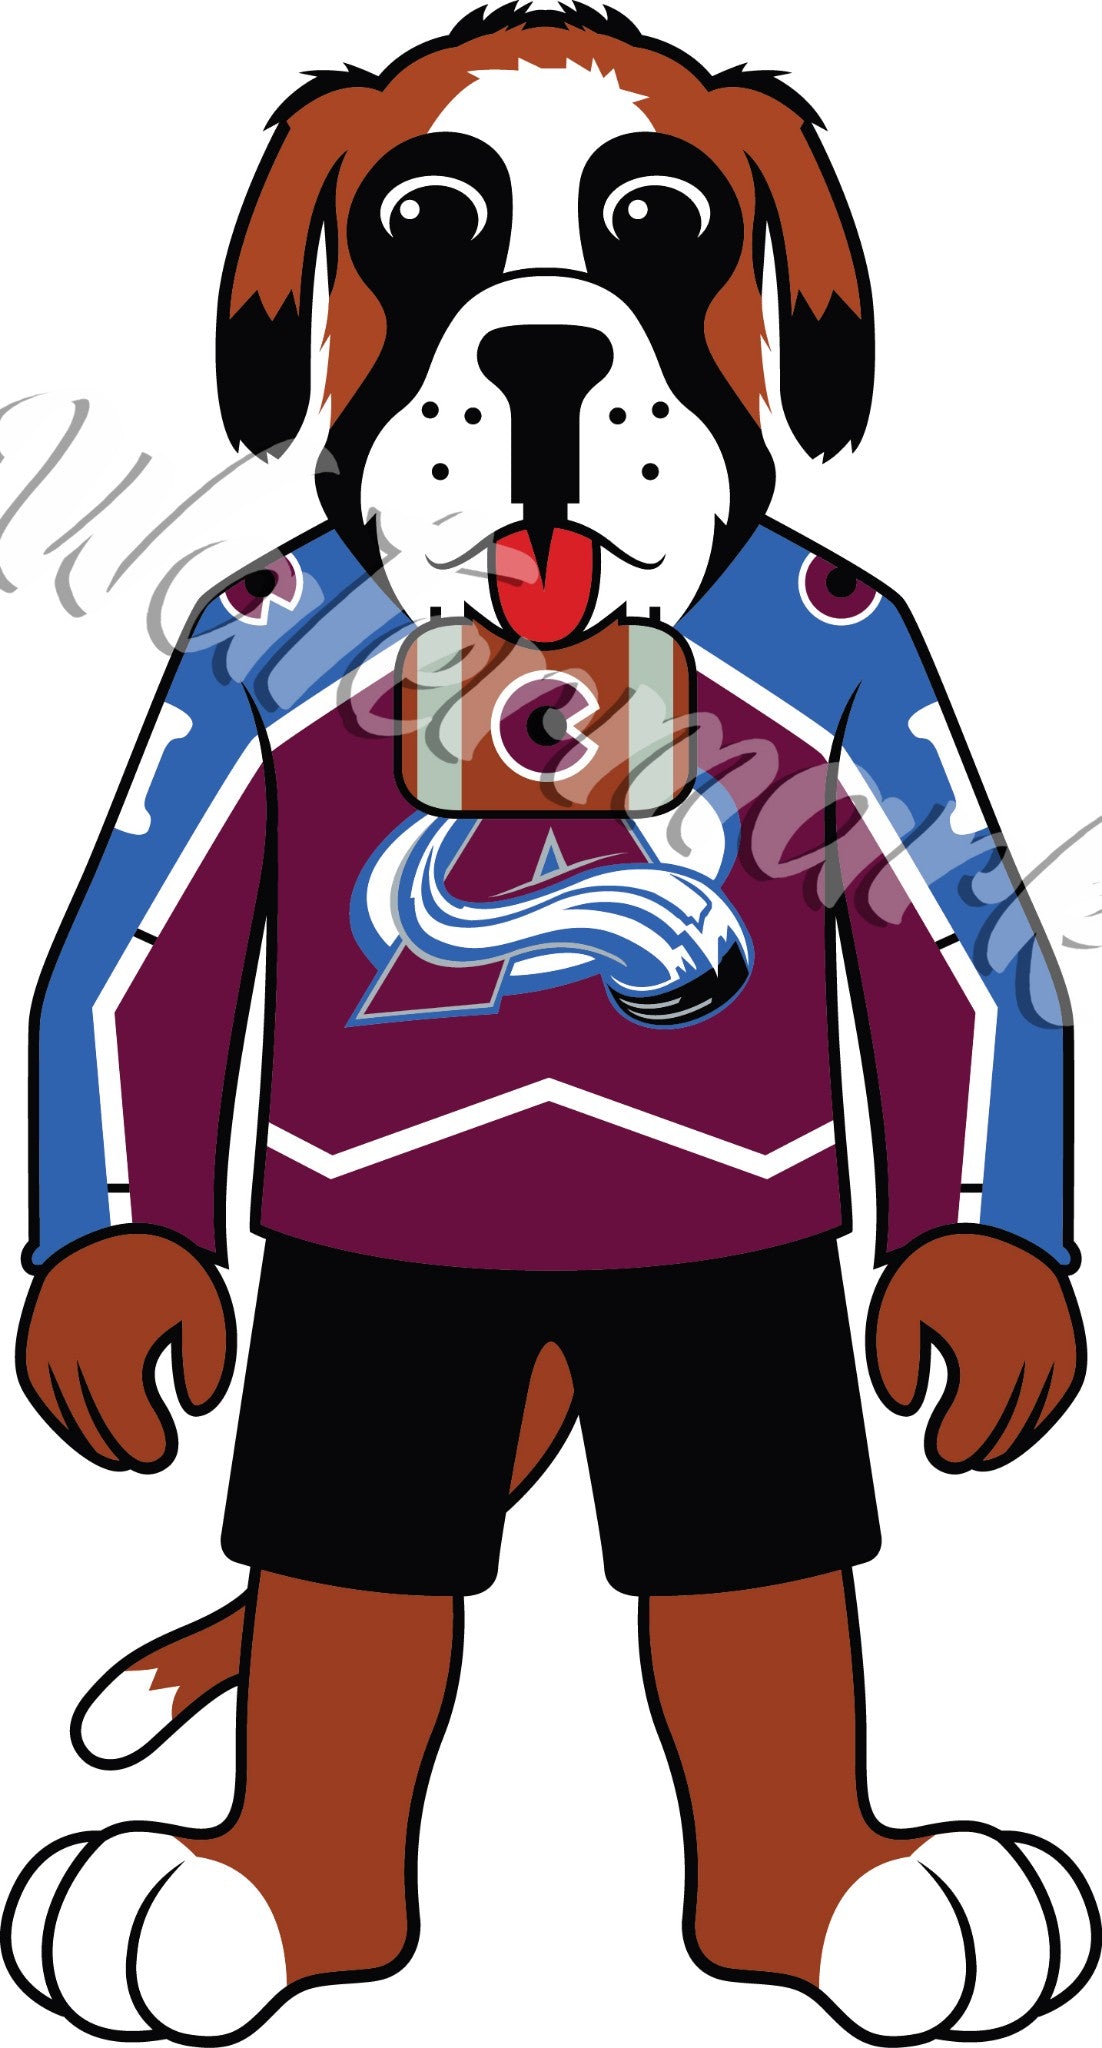 Colorado Avalanche Dog Hockey Jersey